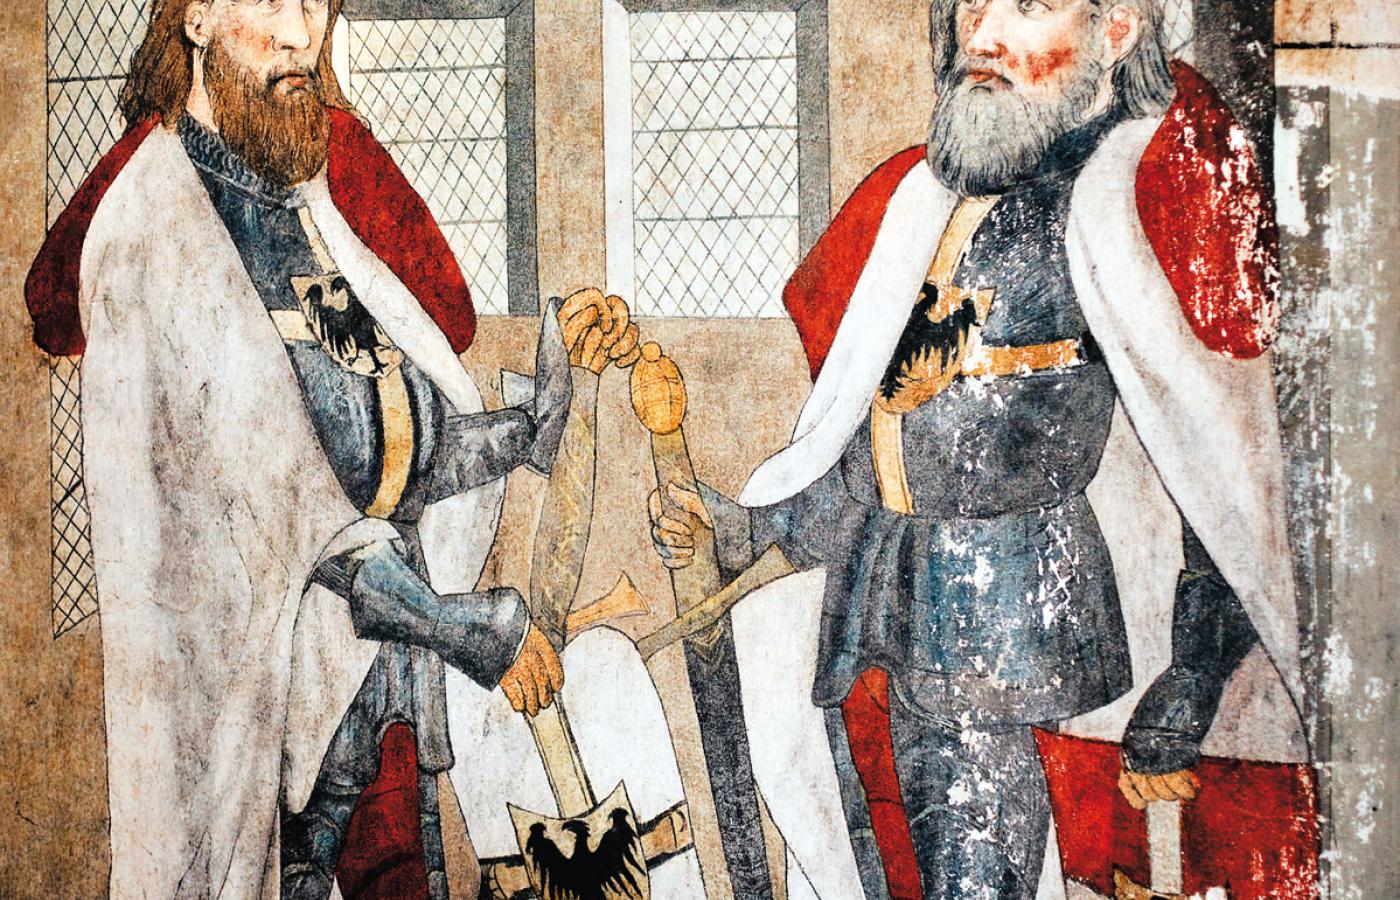 Rycerze krzyżaccy Werner von Orseln i Ludolf Koenig - malowidło w kwidzyńskiej katedrze, XIV w.